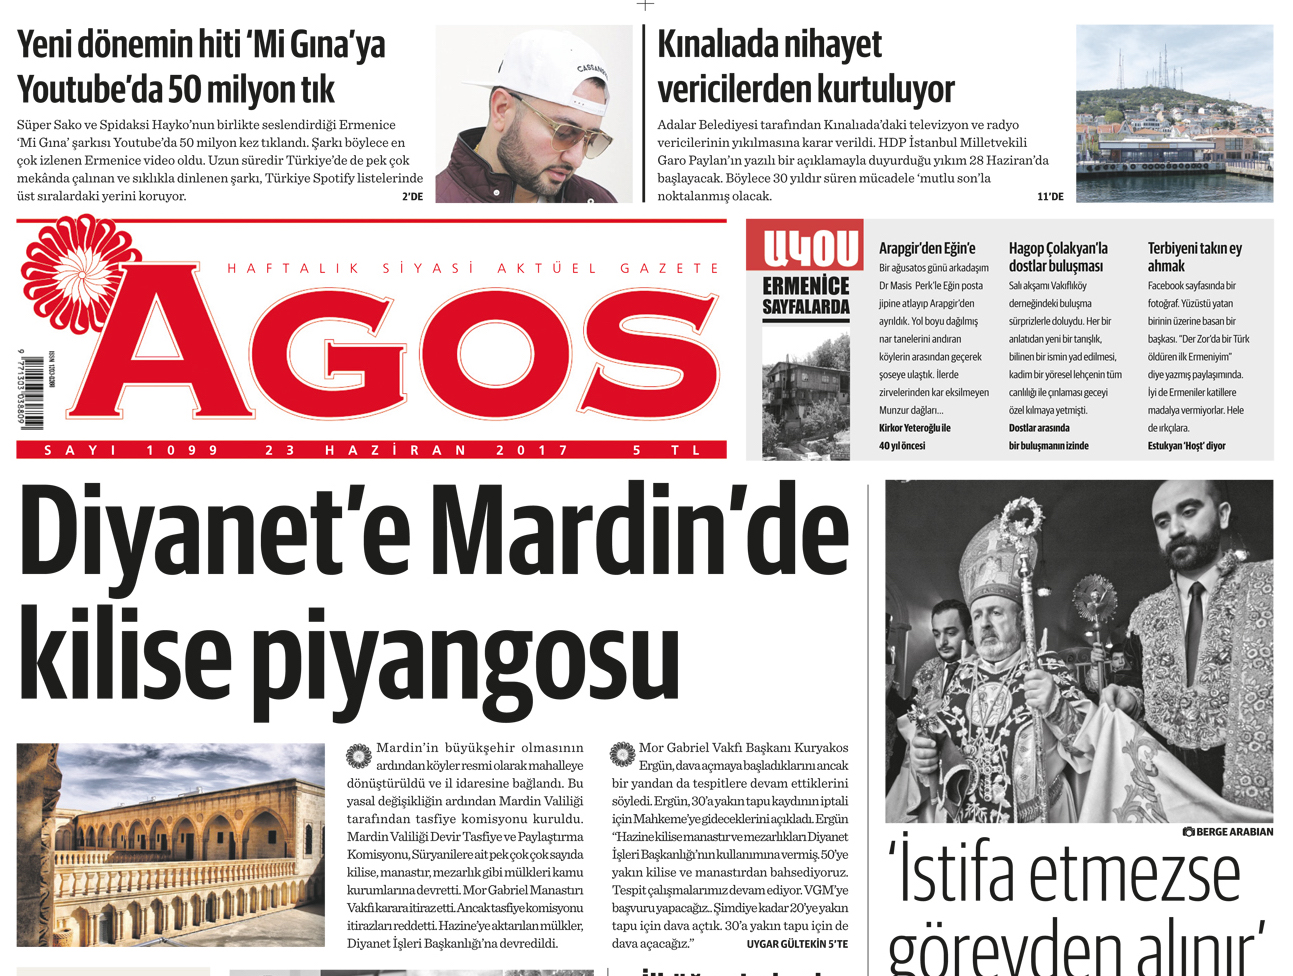 Agos'un Manşeti- Diyanet’e Mardin’de kilise piyangosu